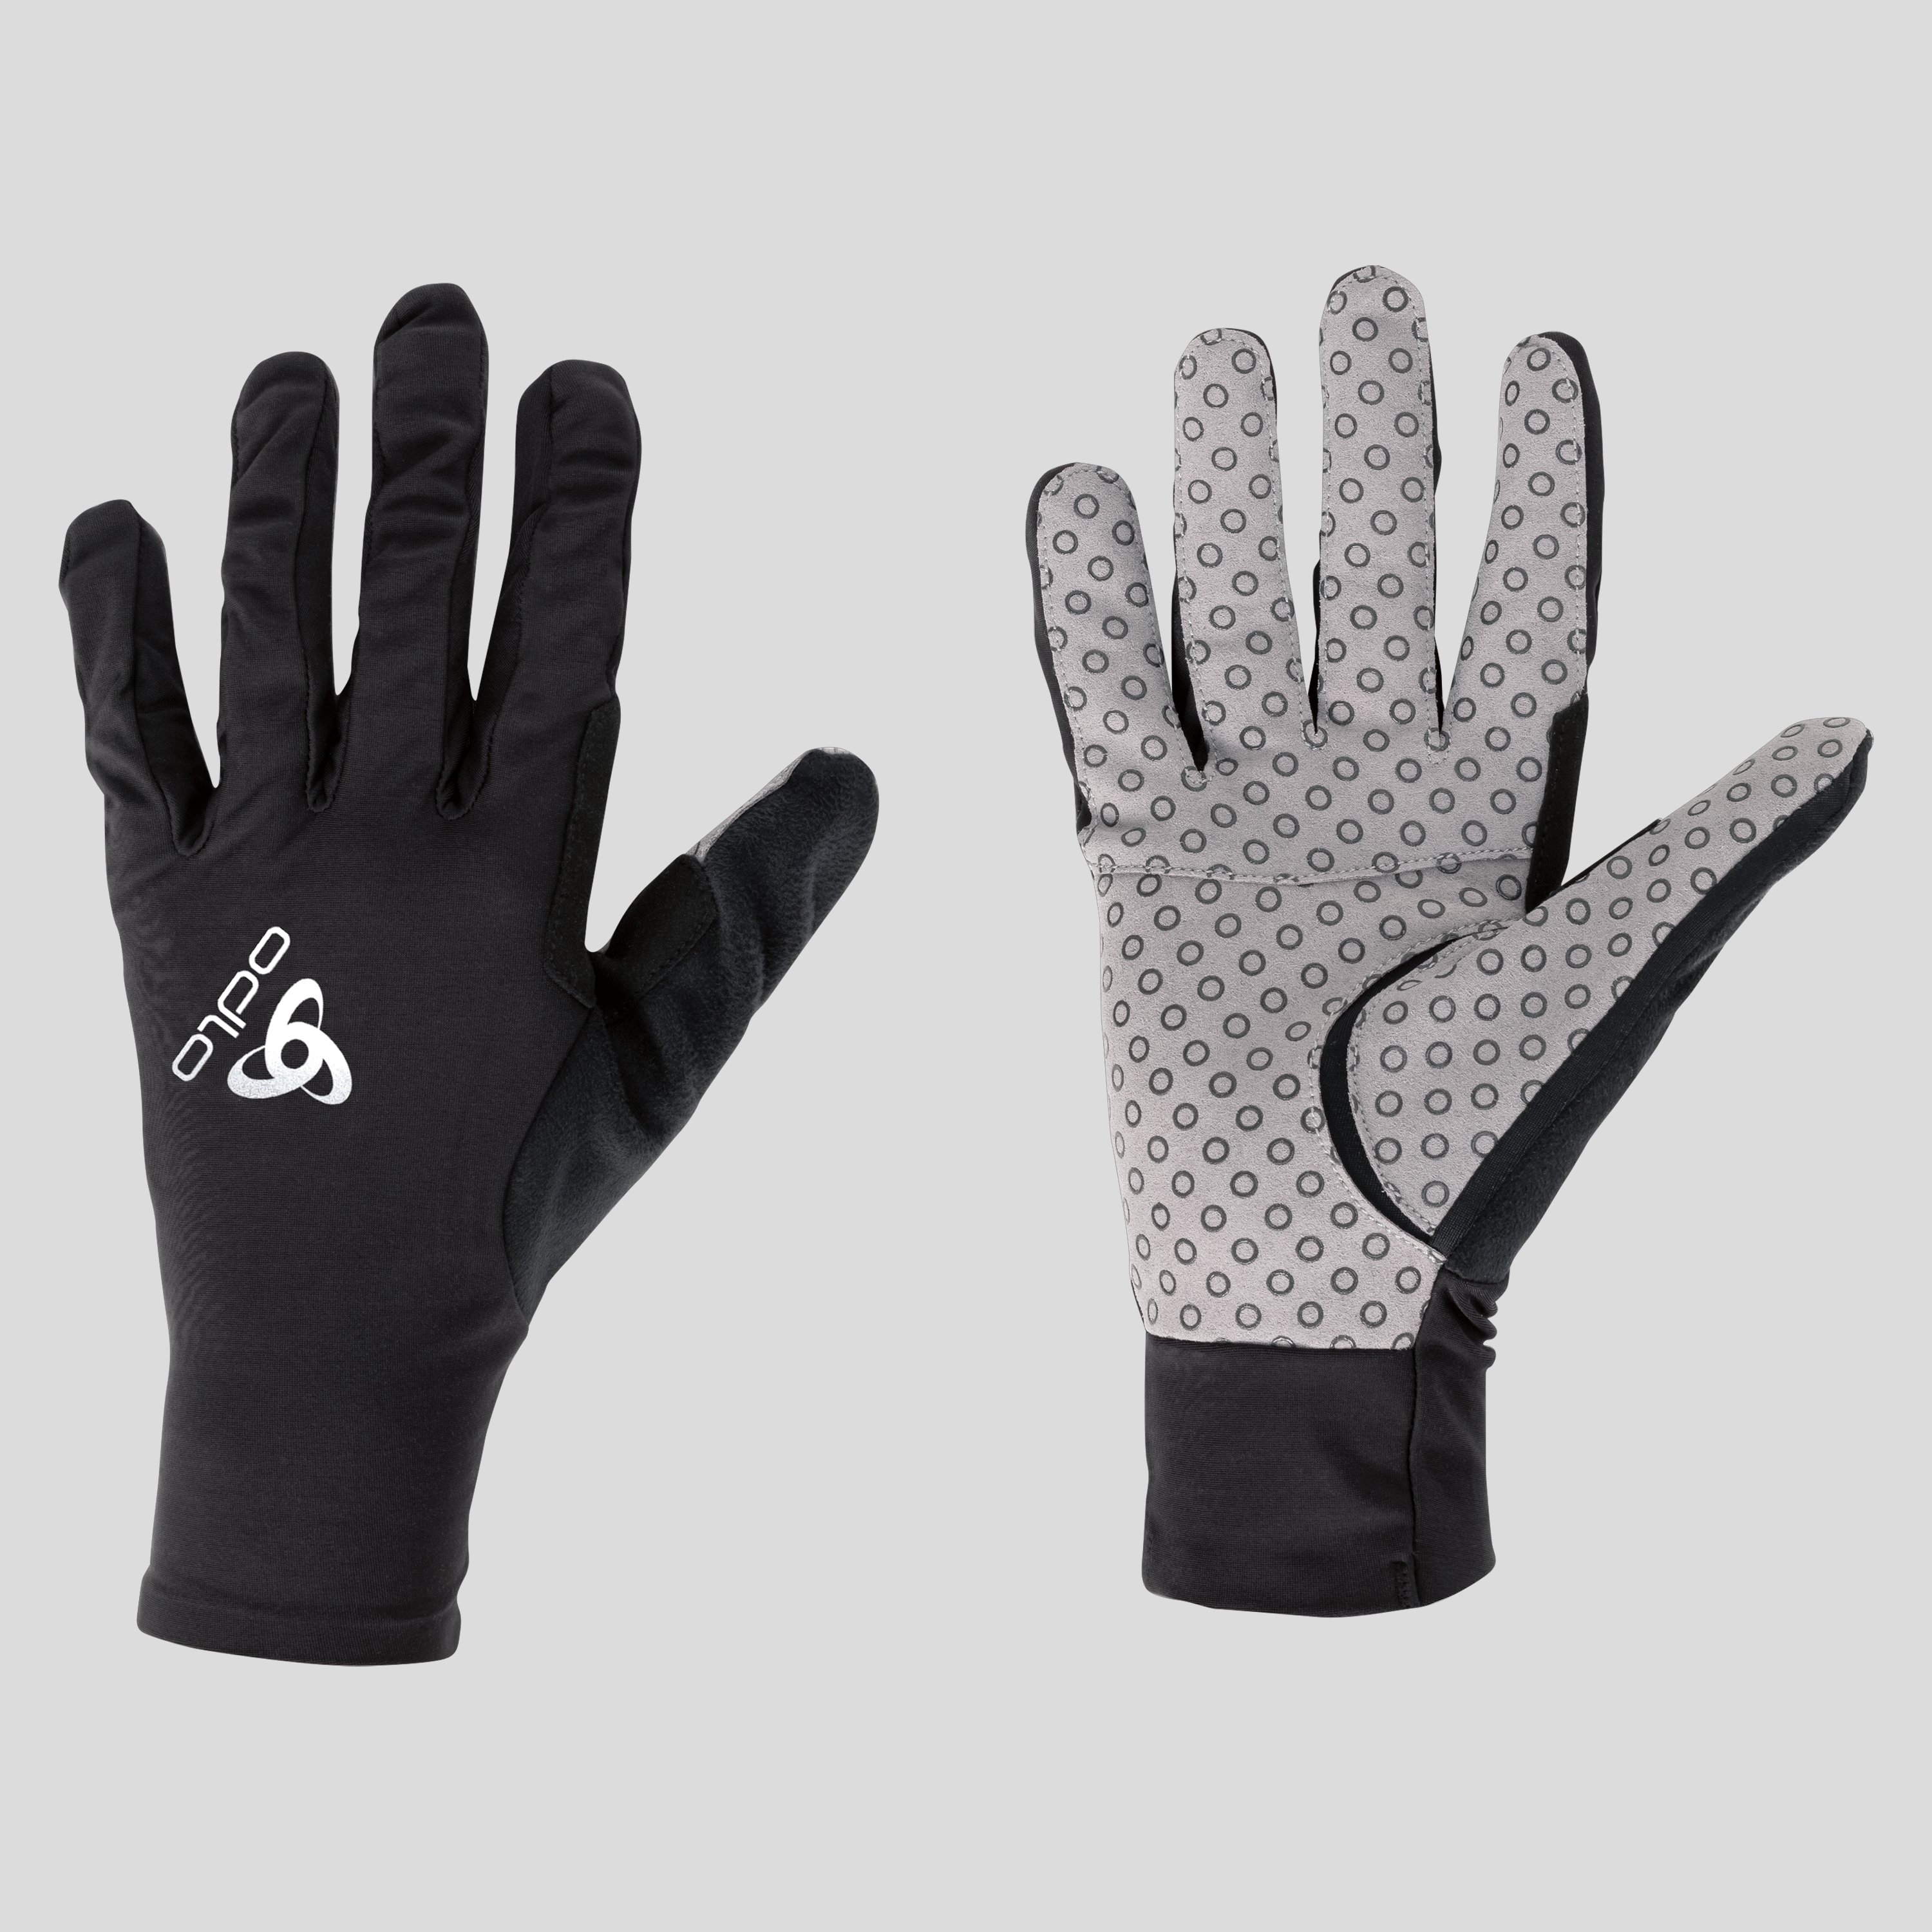 ODLO Zeroweight X-Light Handschuhe, M, schwarz